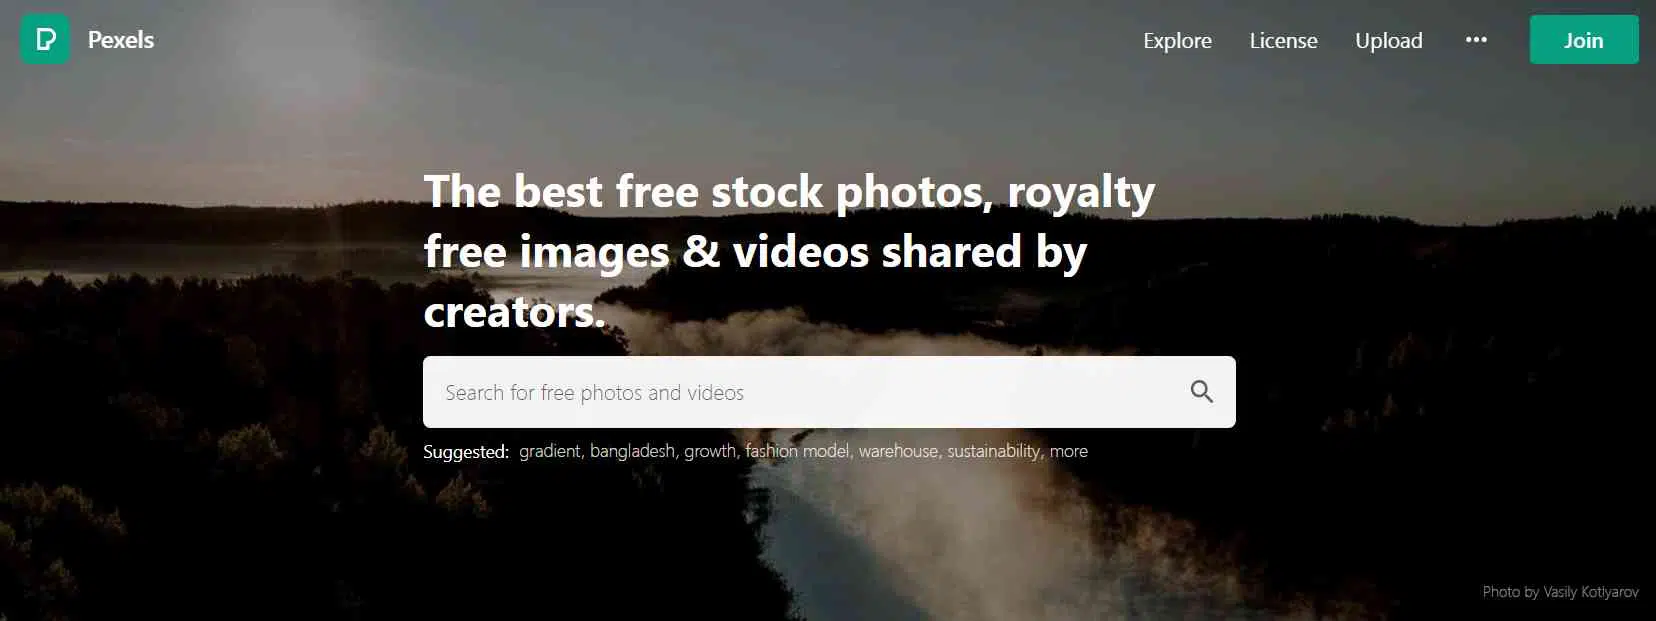 مواقع تحميل الصور بجودة عالية مجانا بدون حقوق ملكية 4